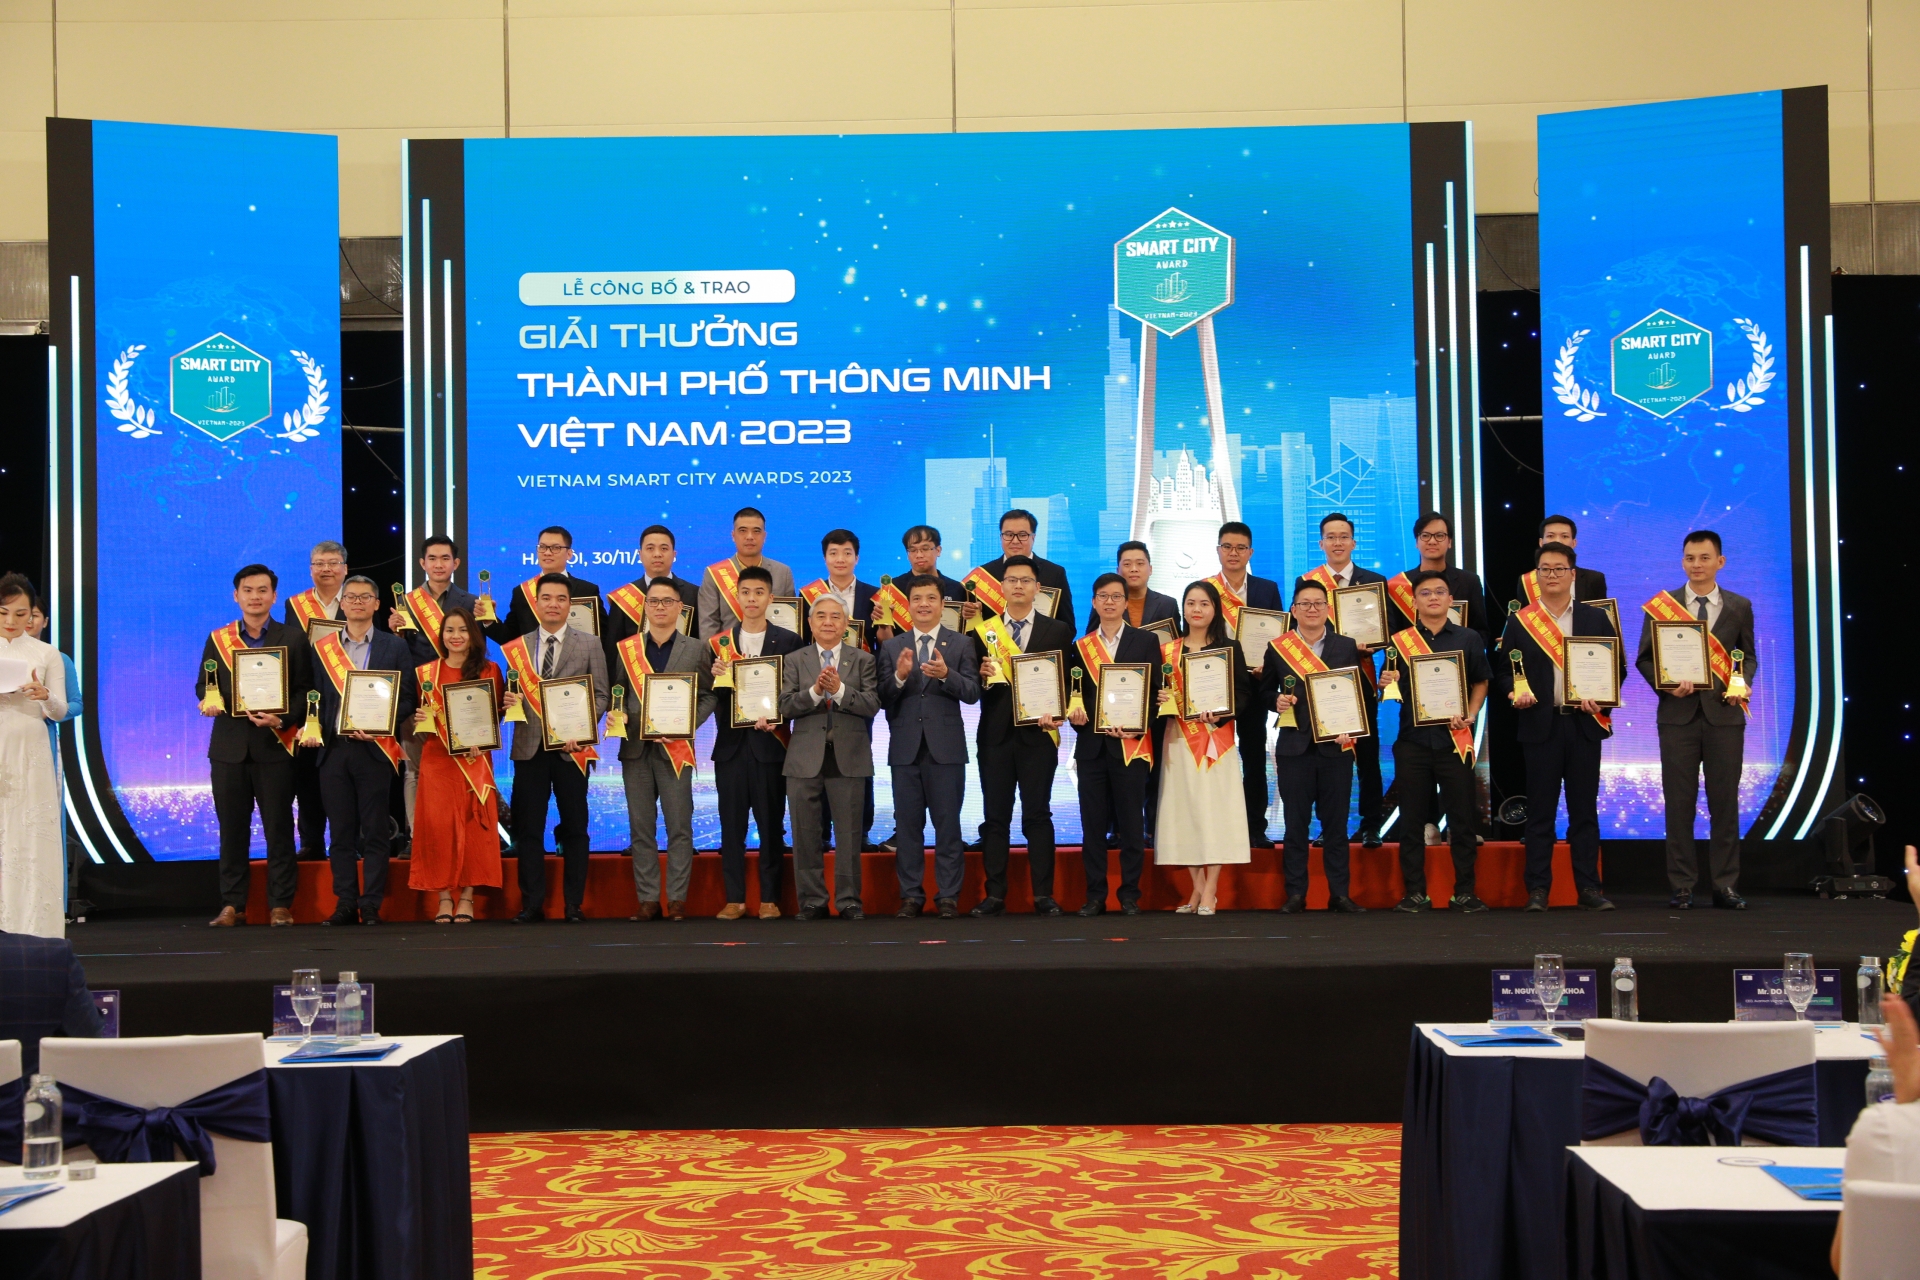 Vinh danh 32 giải thưởng thành phố thông minh Việt Nam 2023